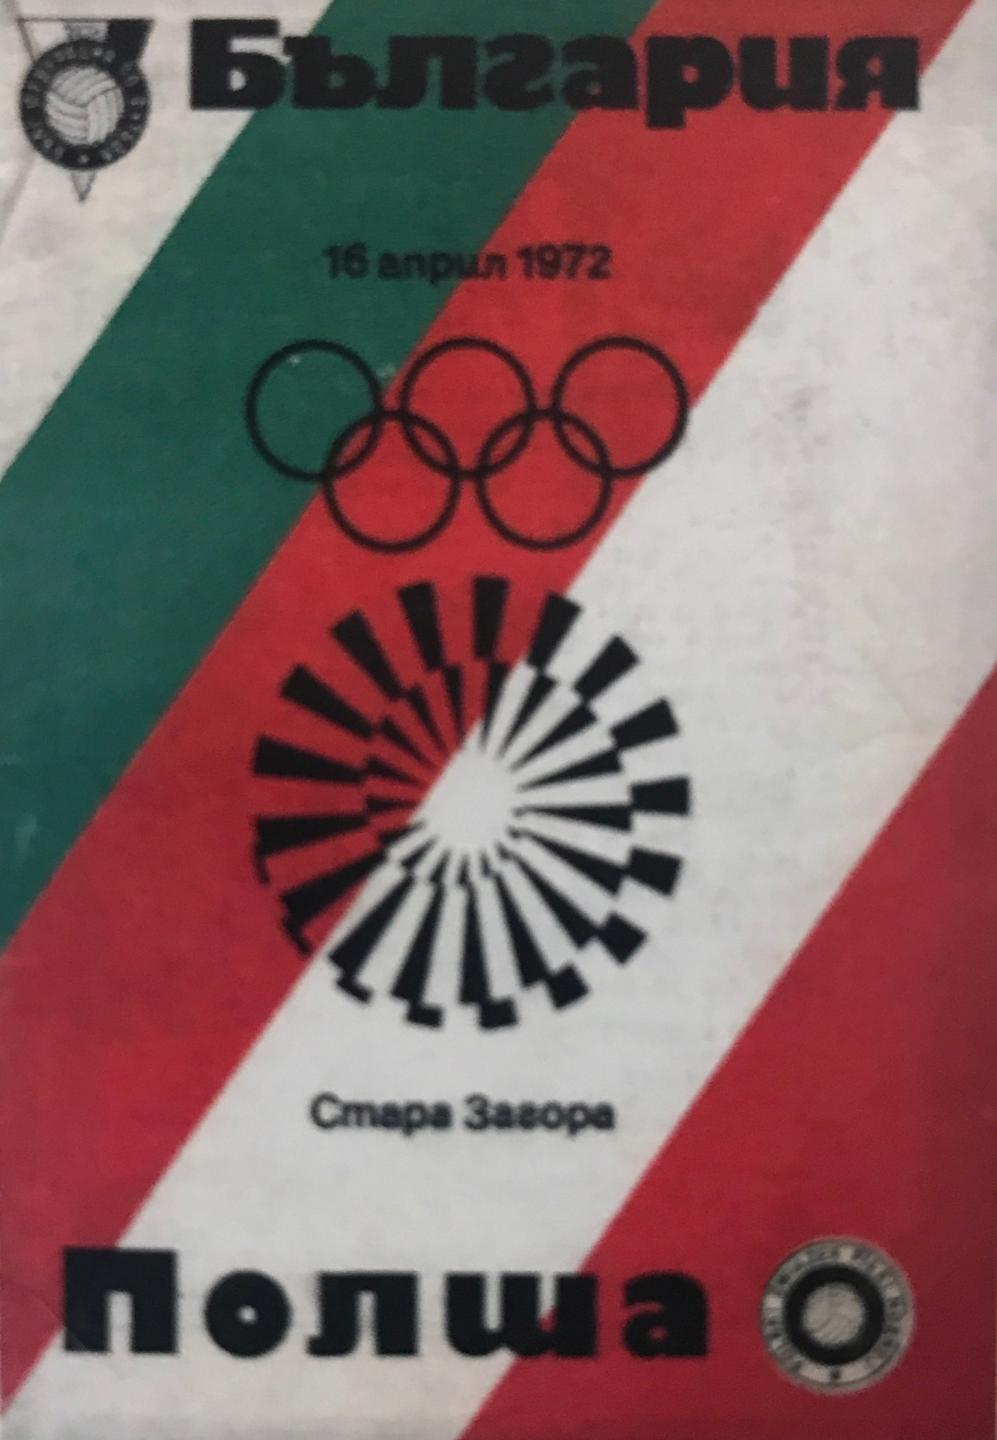 Program meczowy Bułgaria - Polska 3:1 (16.04.1972)